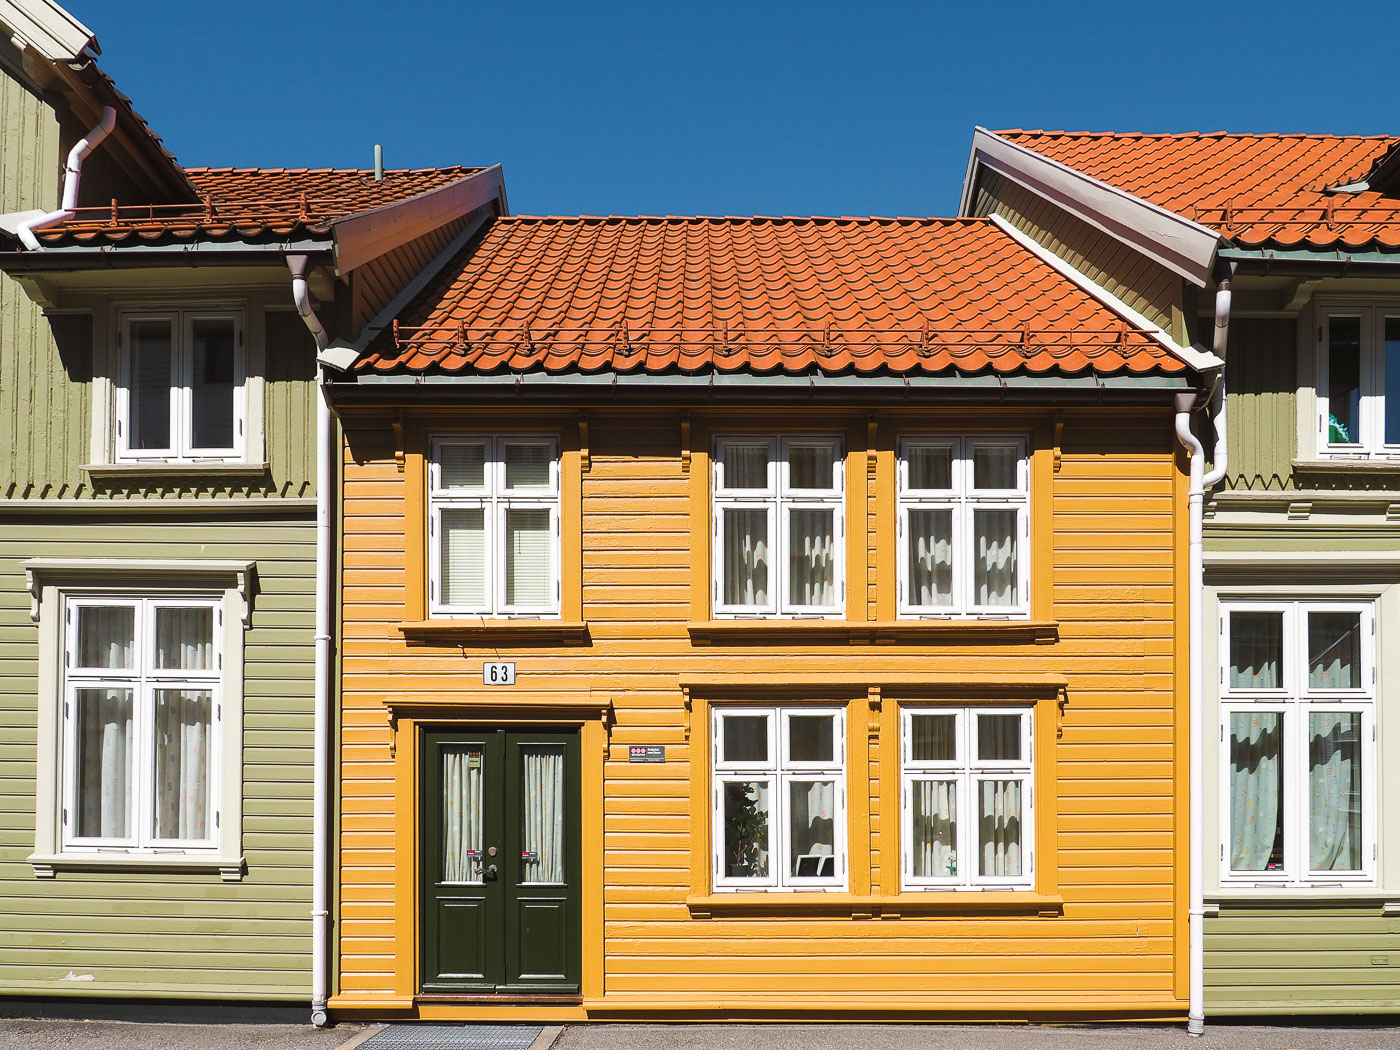 De typische houten huizen in de wijk Posebyen in Kristiansand.